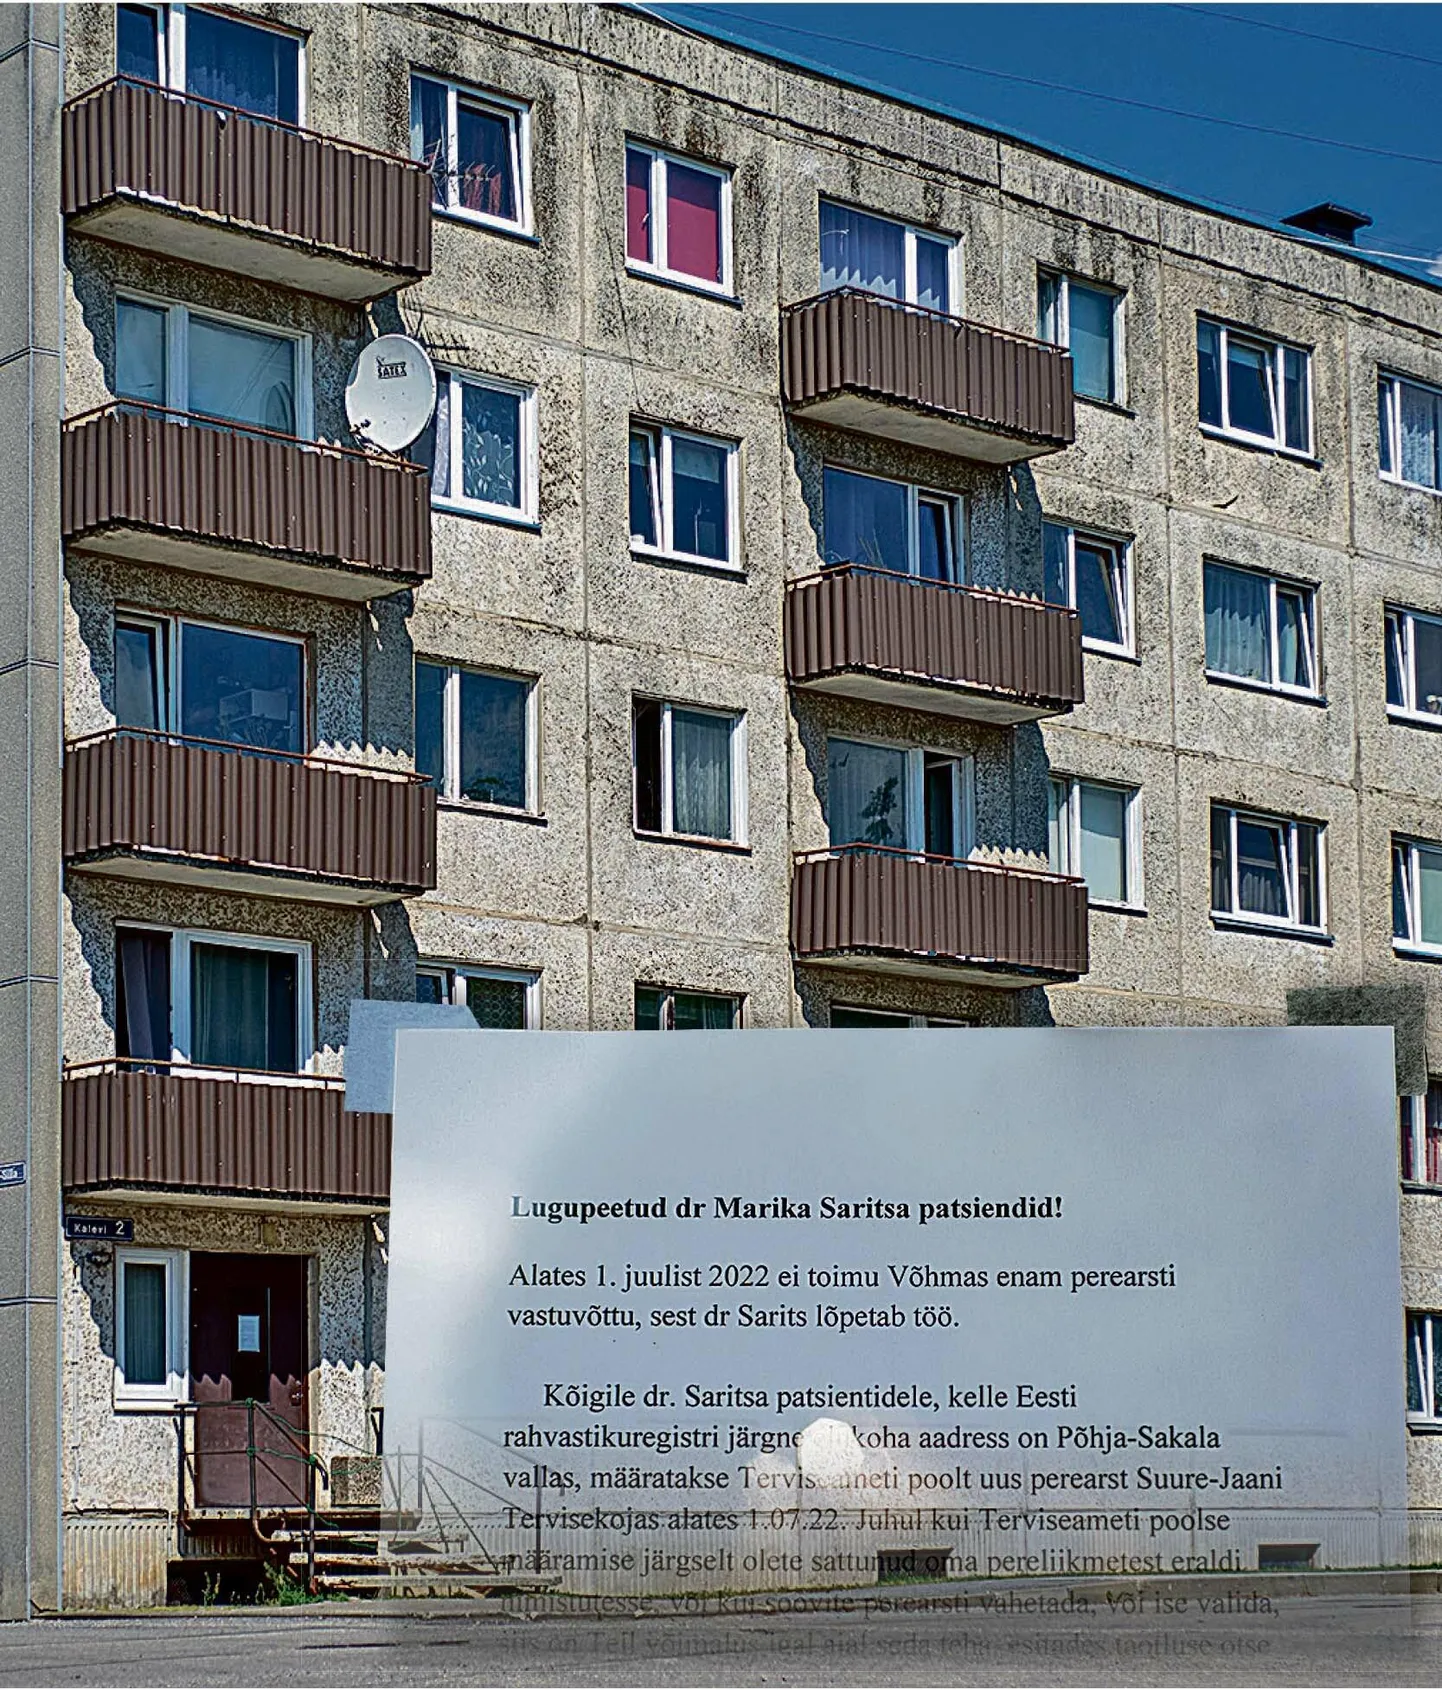 Marika Saritsa kabinet on sisse seatud korrusmajas. Perearsti kabineti uksel on kiri, mis teatab, et 1. juulist Marika Sarits patsiente enam vastu ei võta.